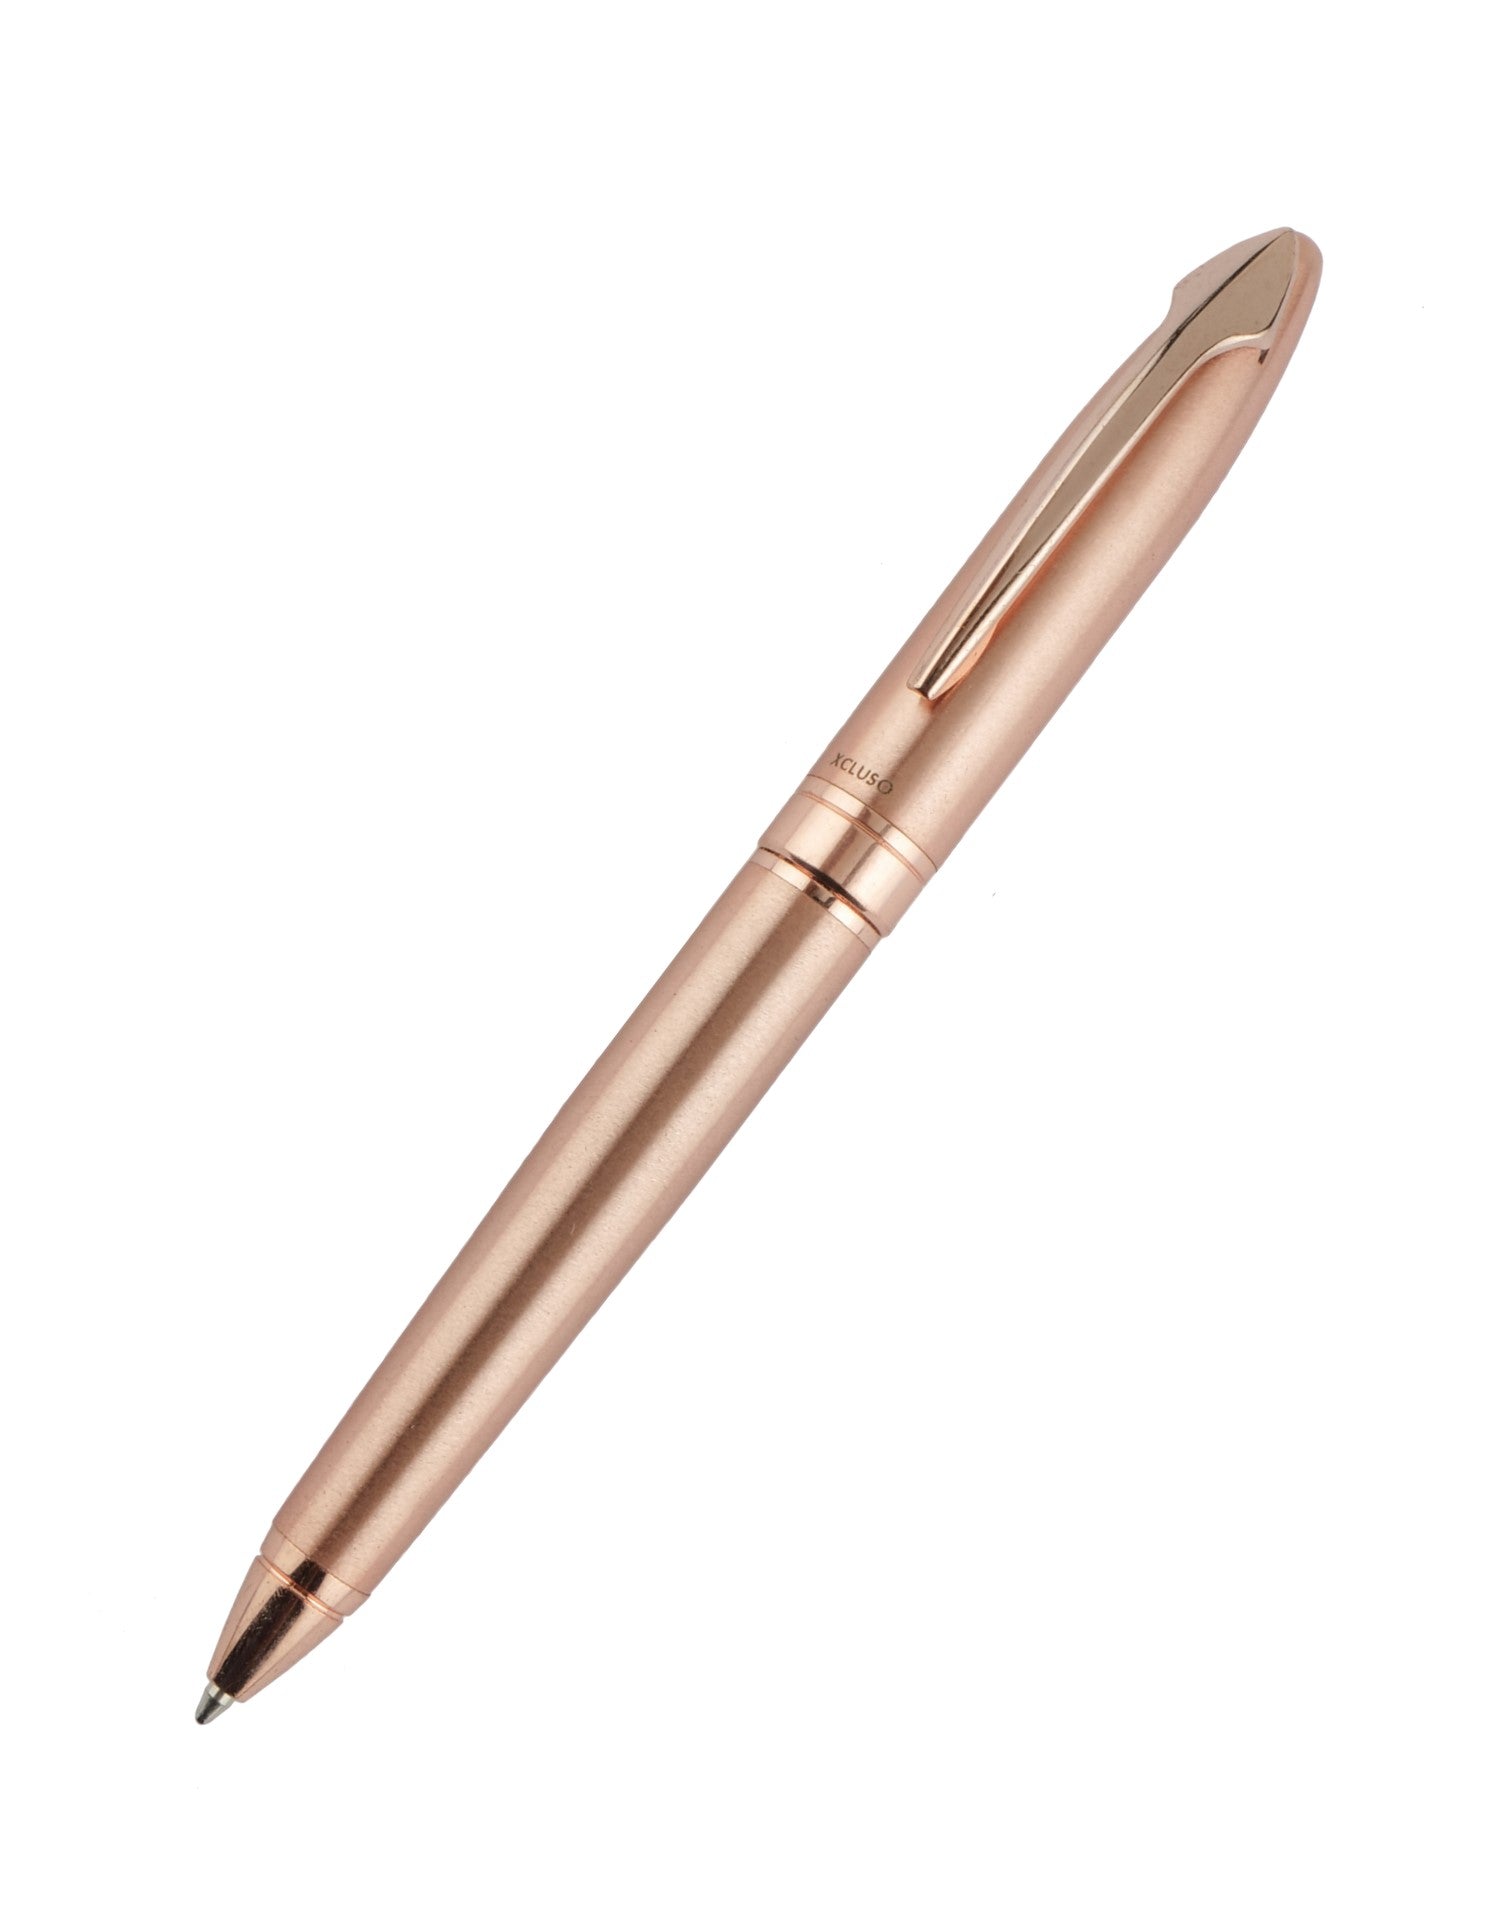 Arteca-481 Copper Ball Pen